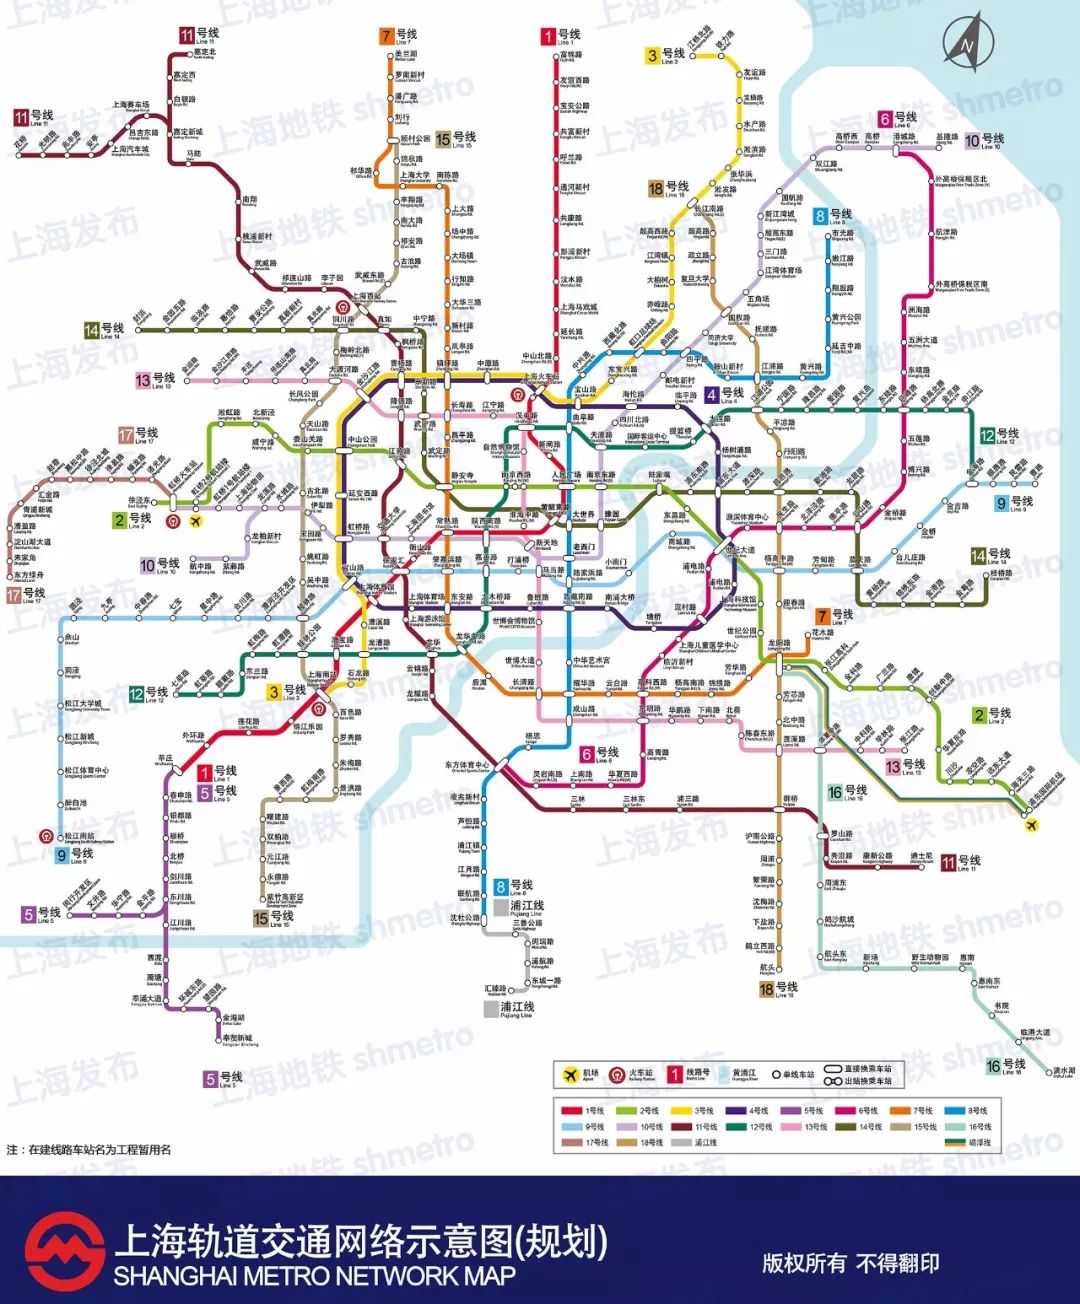 厉害了上海!地铁最新规划图重磅公布!今年内再通车41公里新线路!